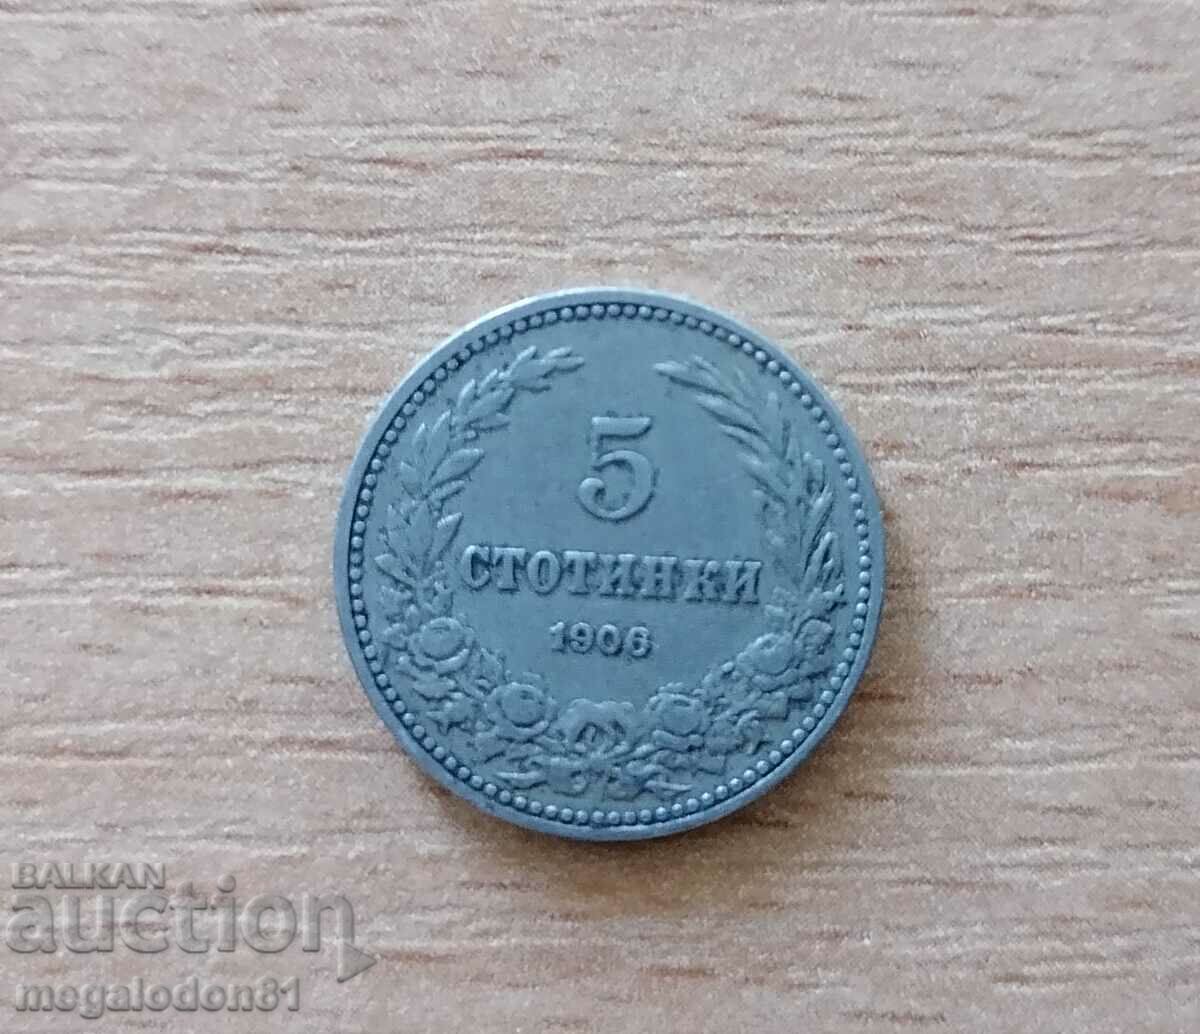 Bulgaria - 5 cenți 1906